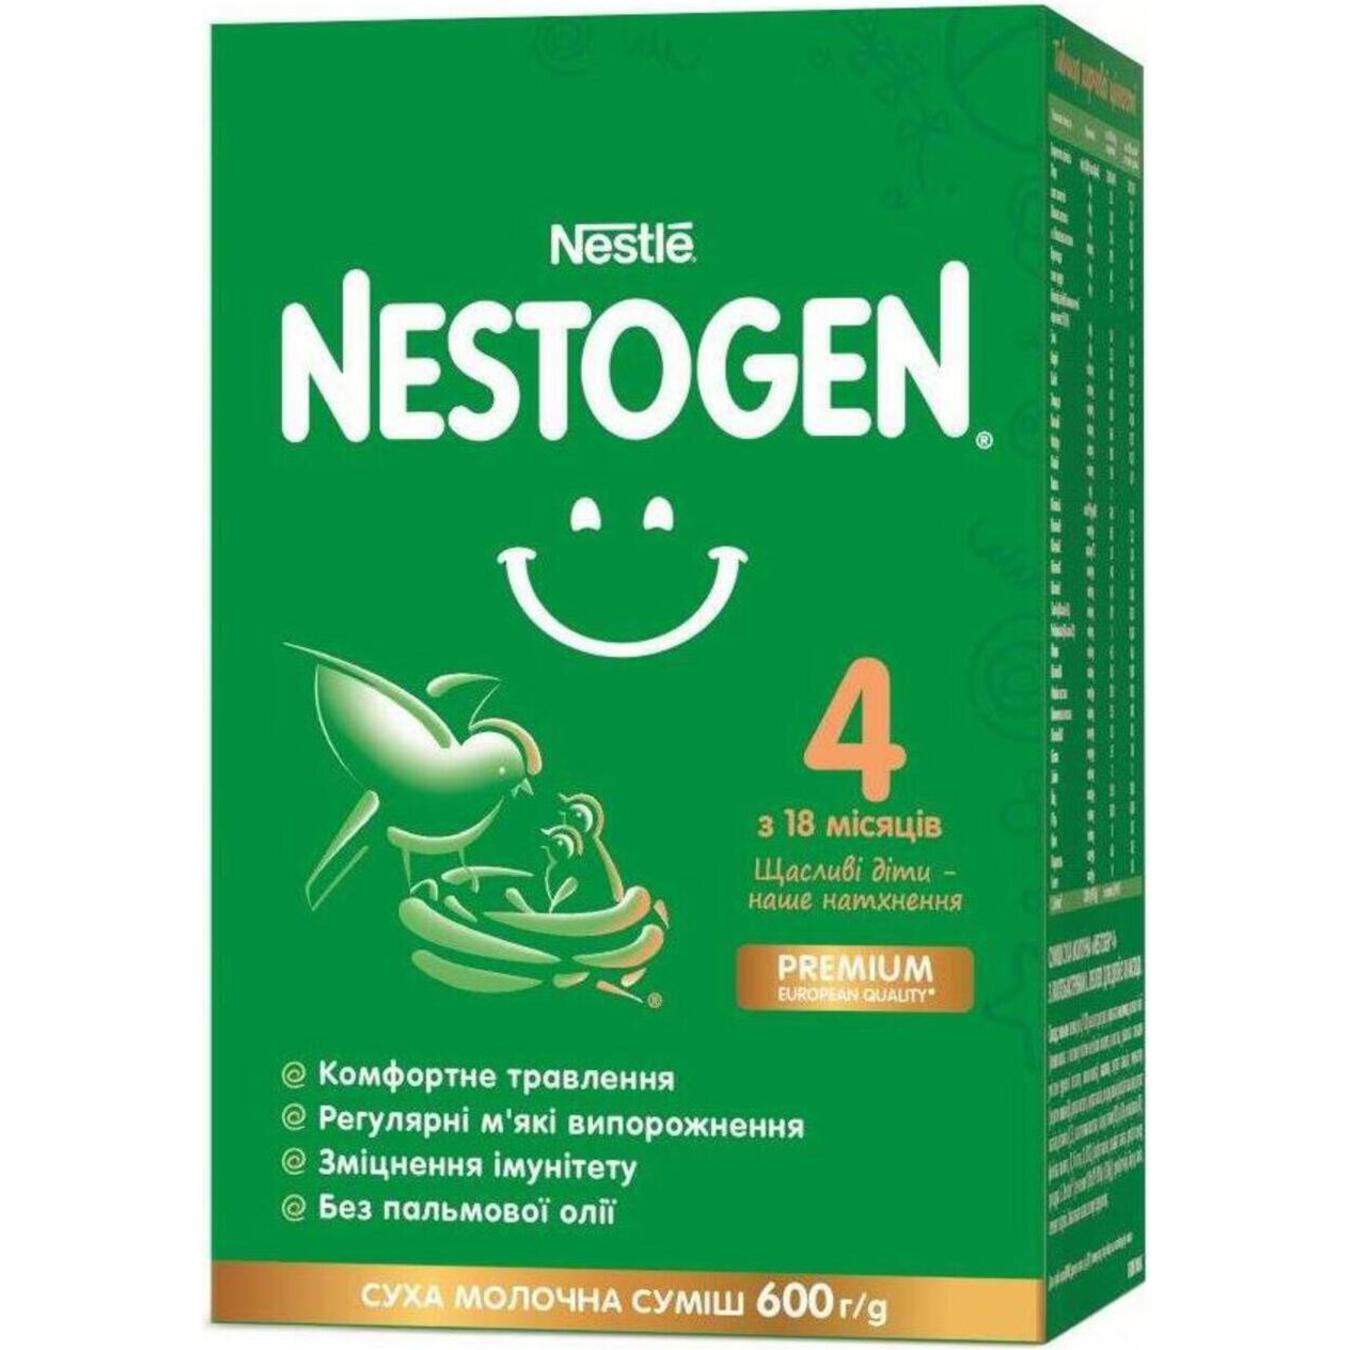 Суміш Nestle Nestogen L. Reuteri 4 з лактобактеріями для дітей з 18 місяців суха молочна 600г